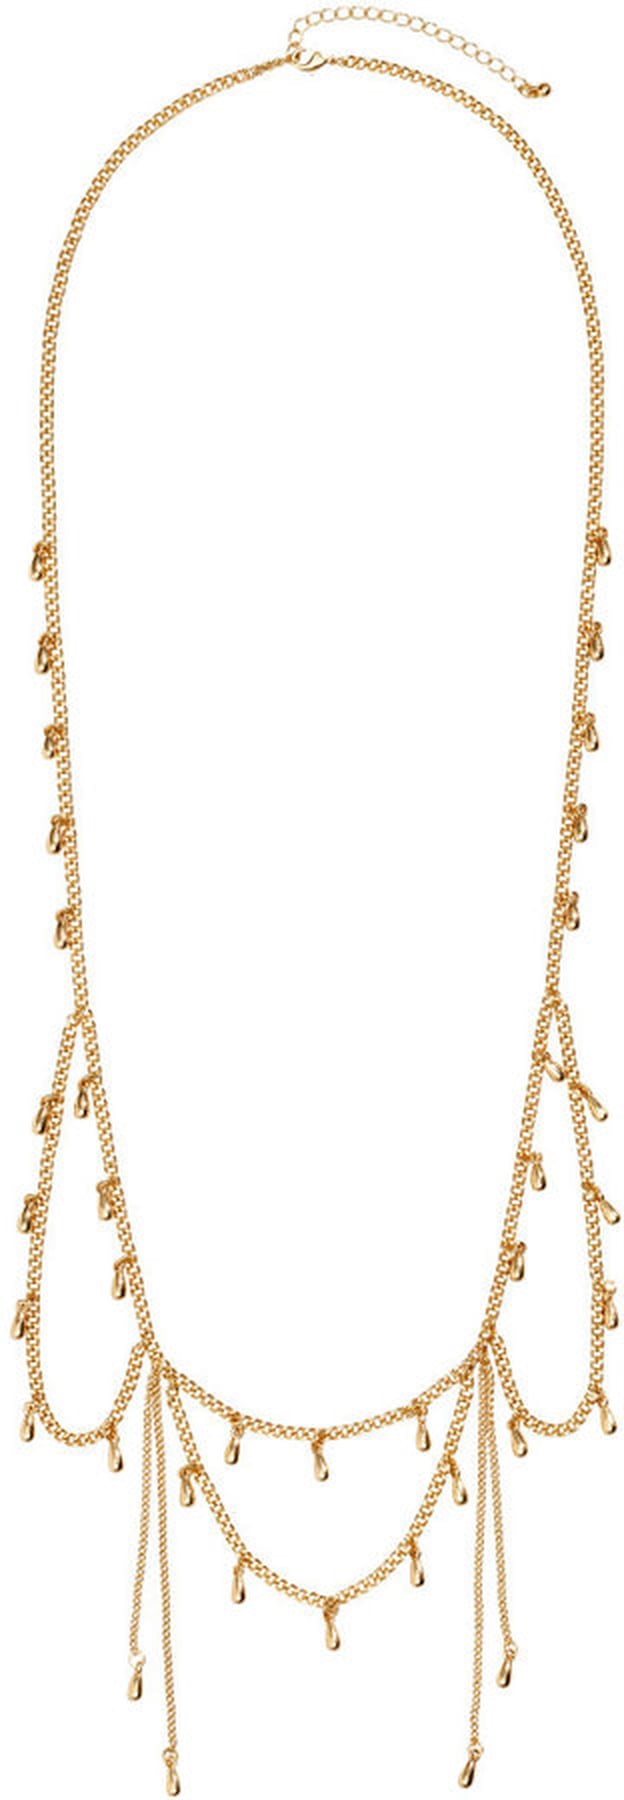 Gigi Hadid Wearing a Necklace as a Belt | POPSUGAR Fashion